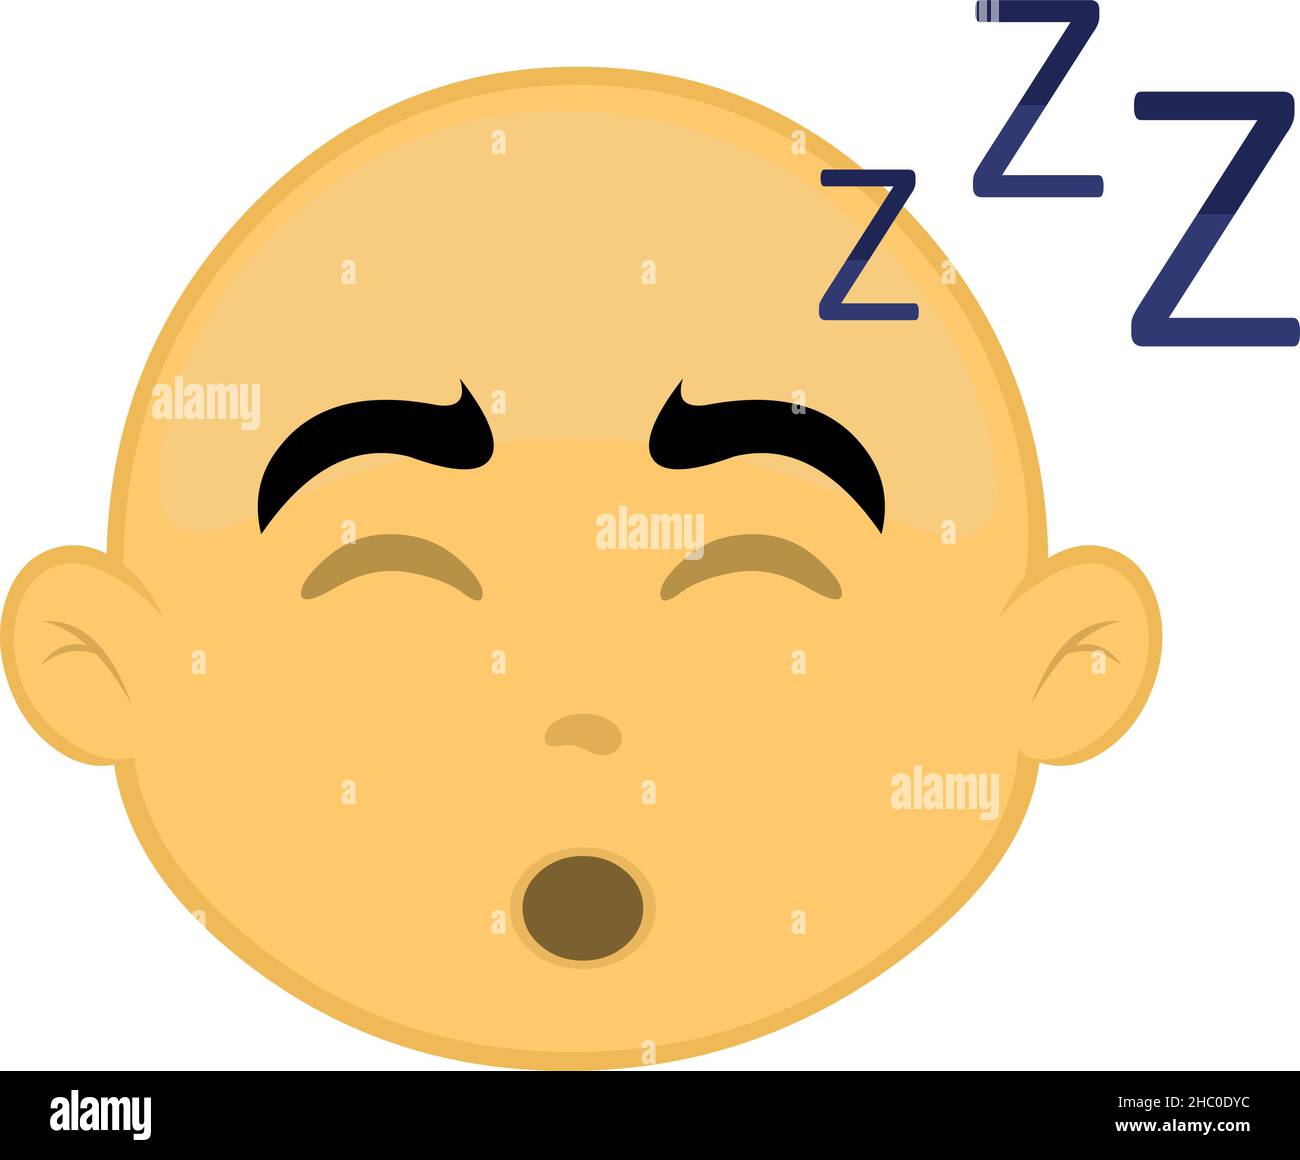 Illustration vectorielle du visage d'un personnage de dessin animé, chauve et jaune, en sommeil Illustration de Vecteur